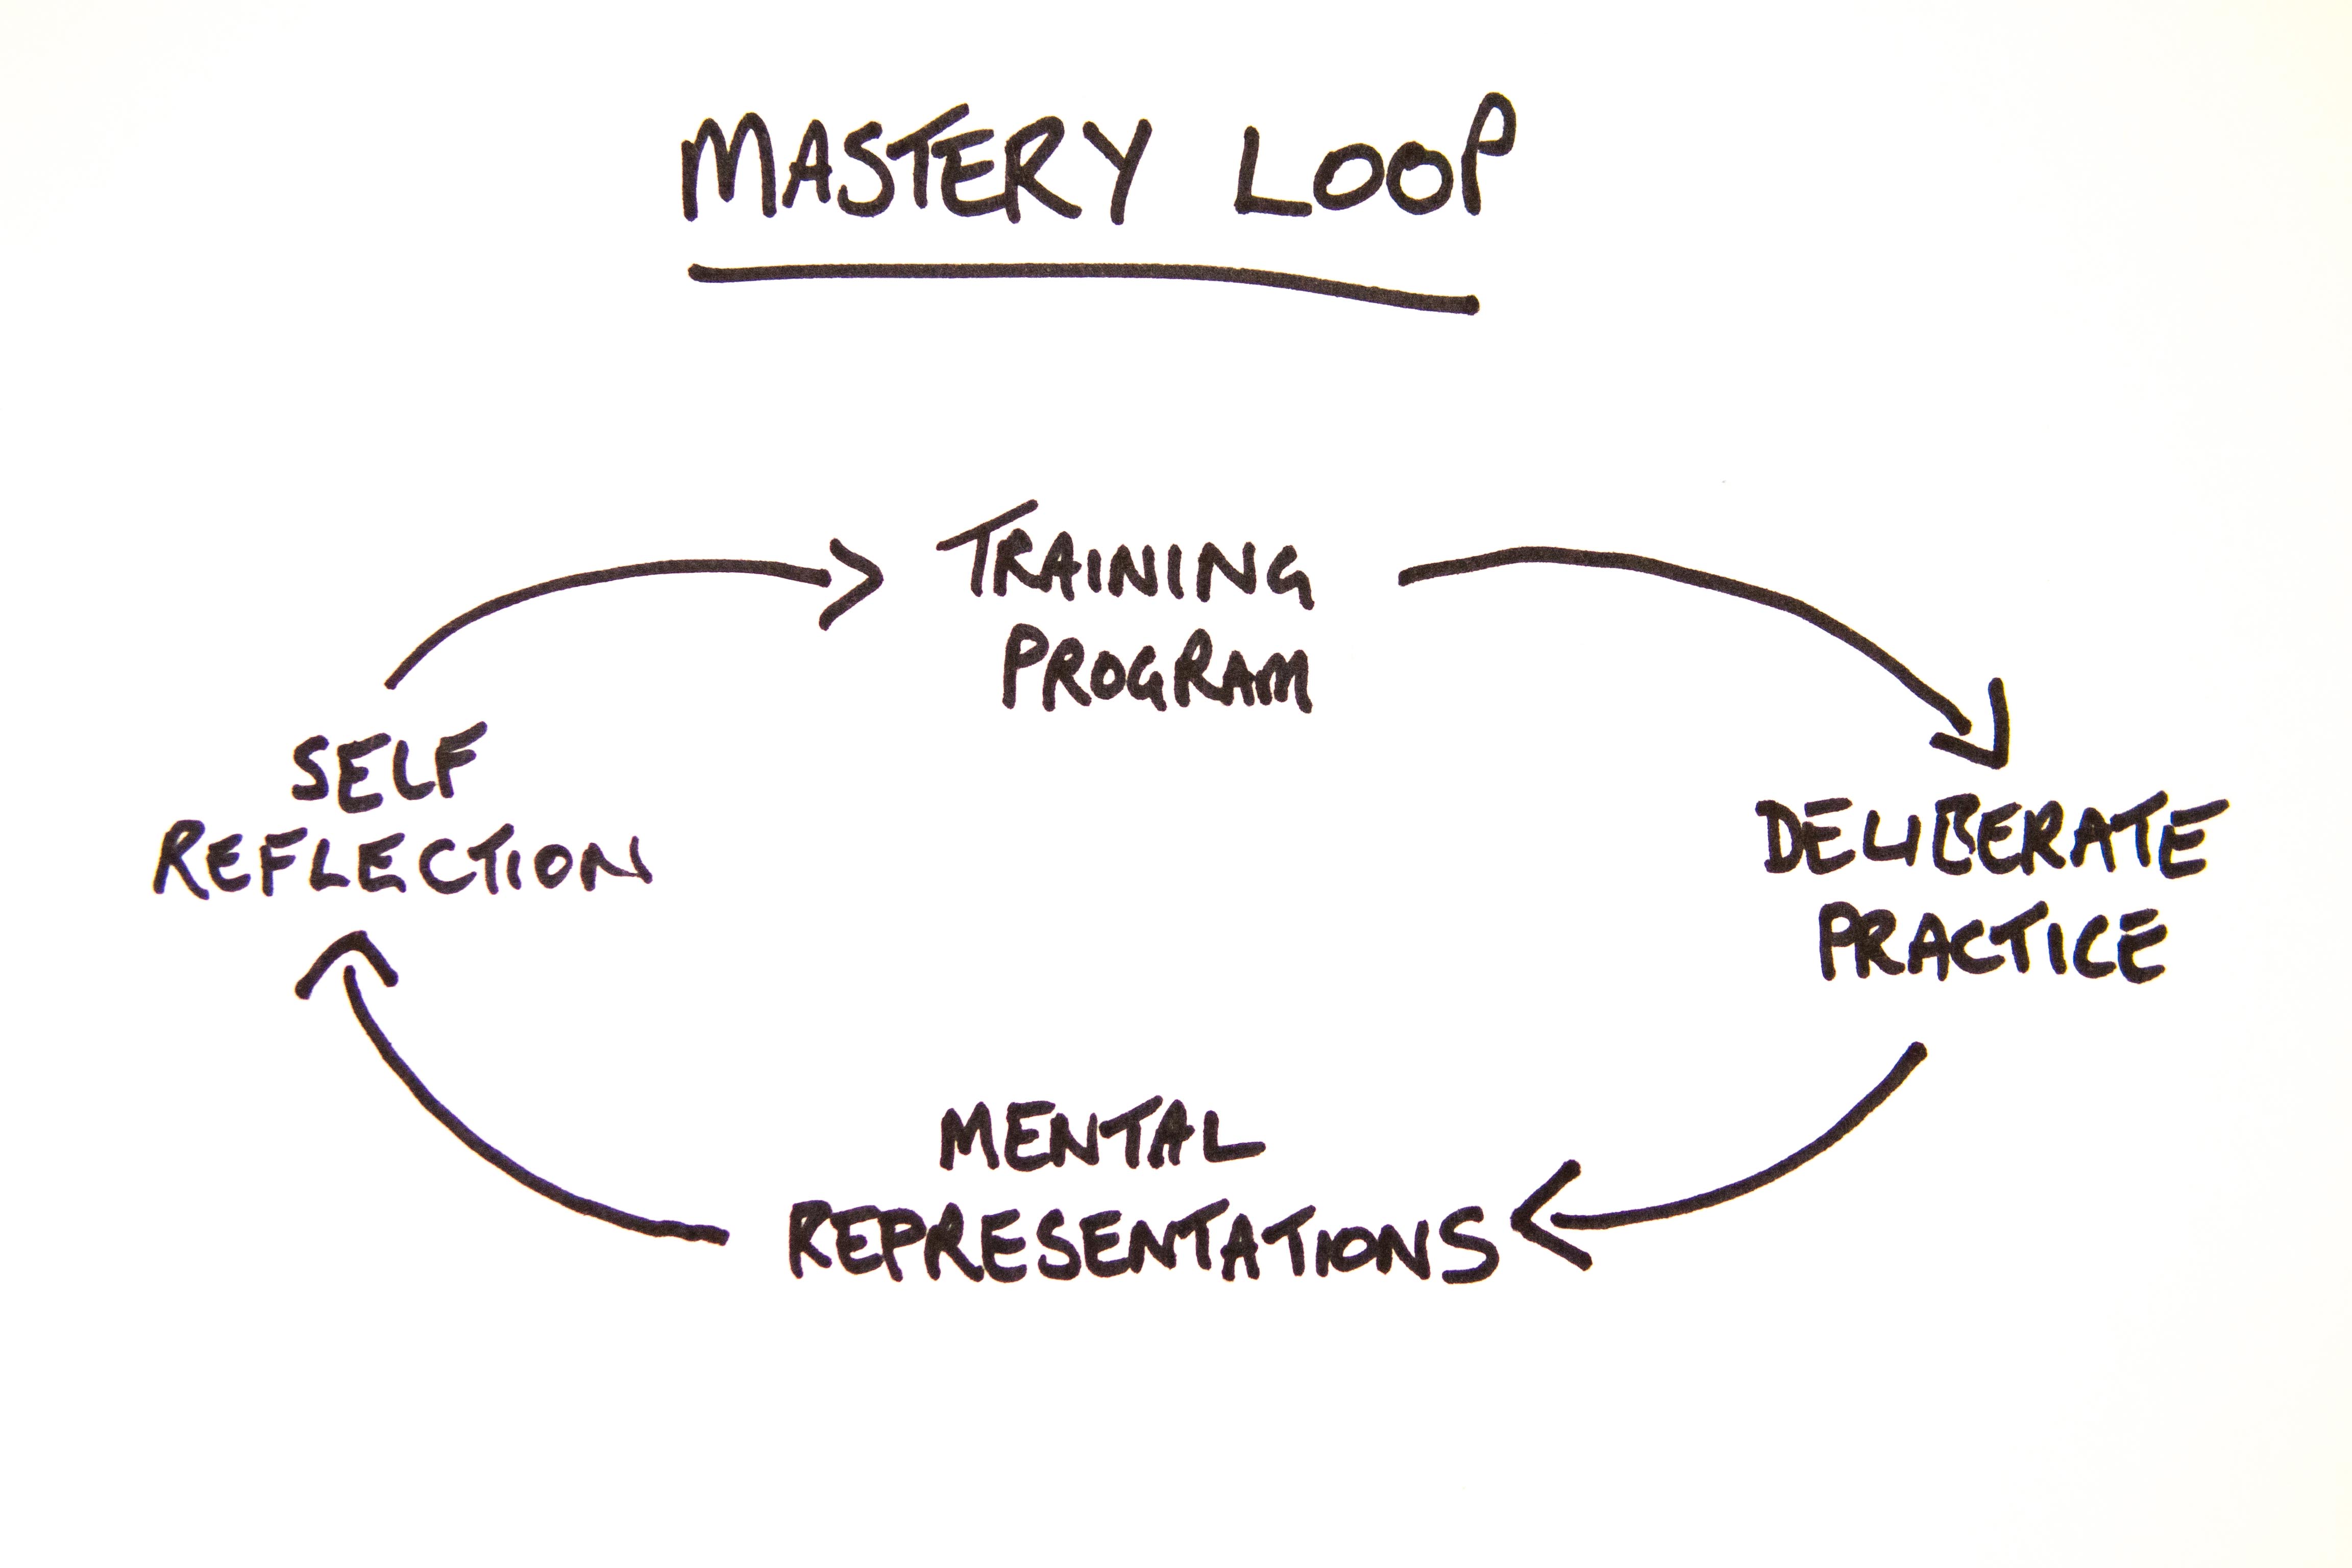 Mastery loop diagram